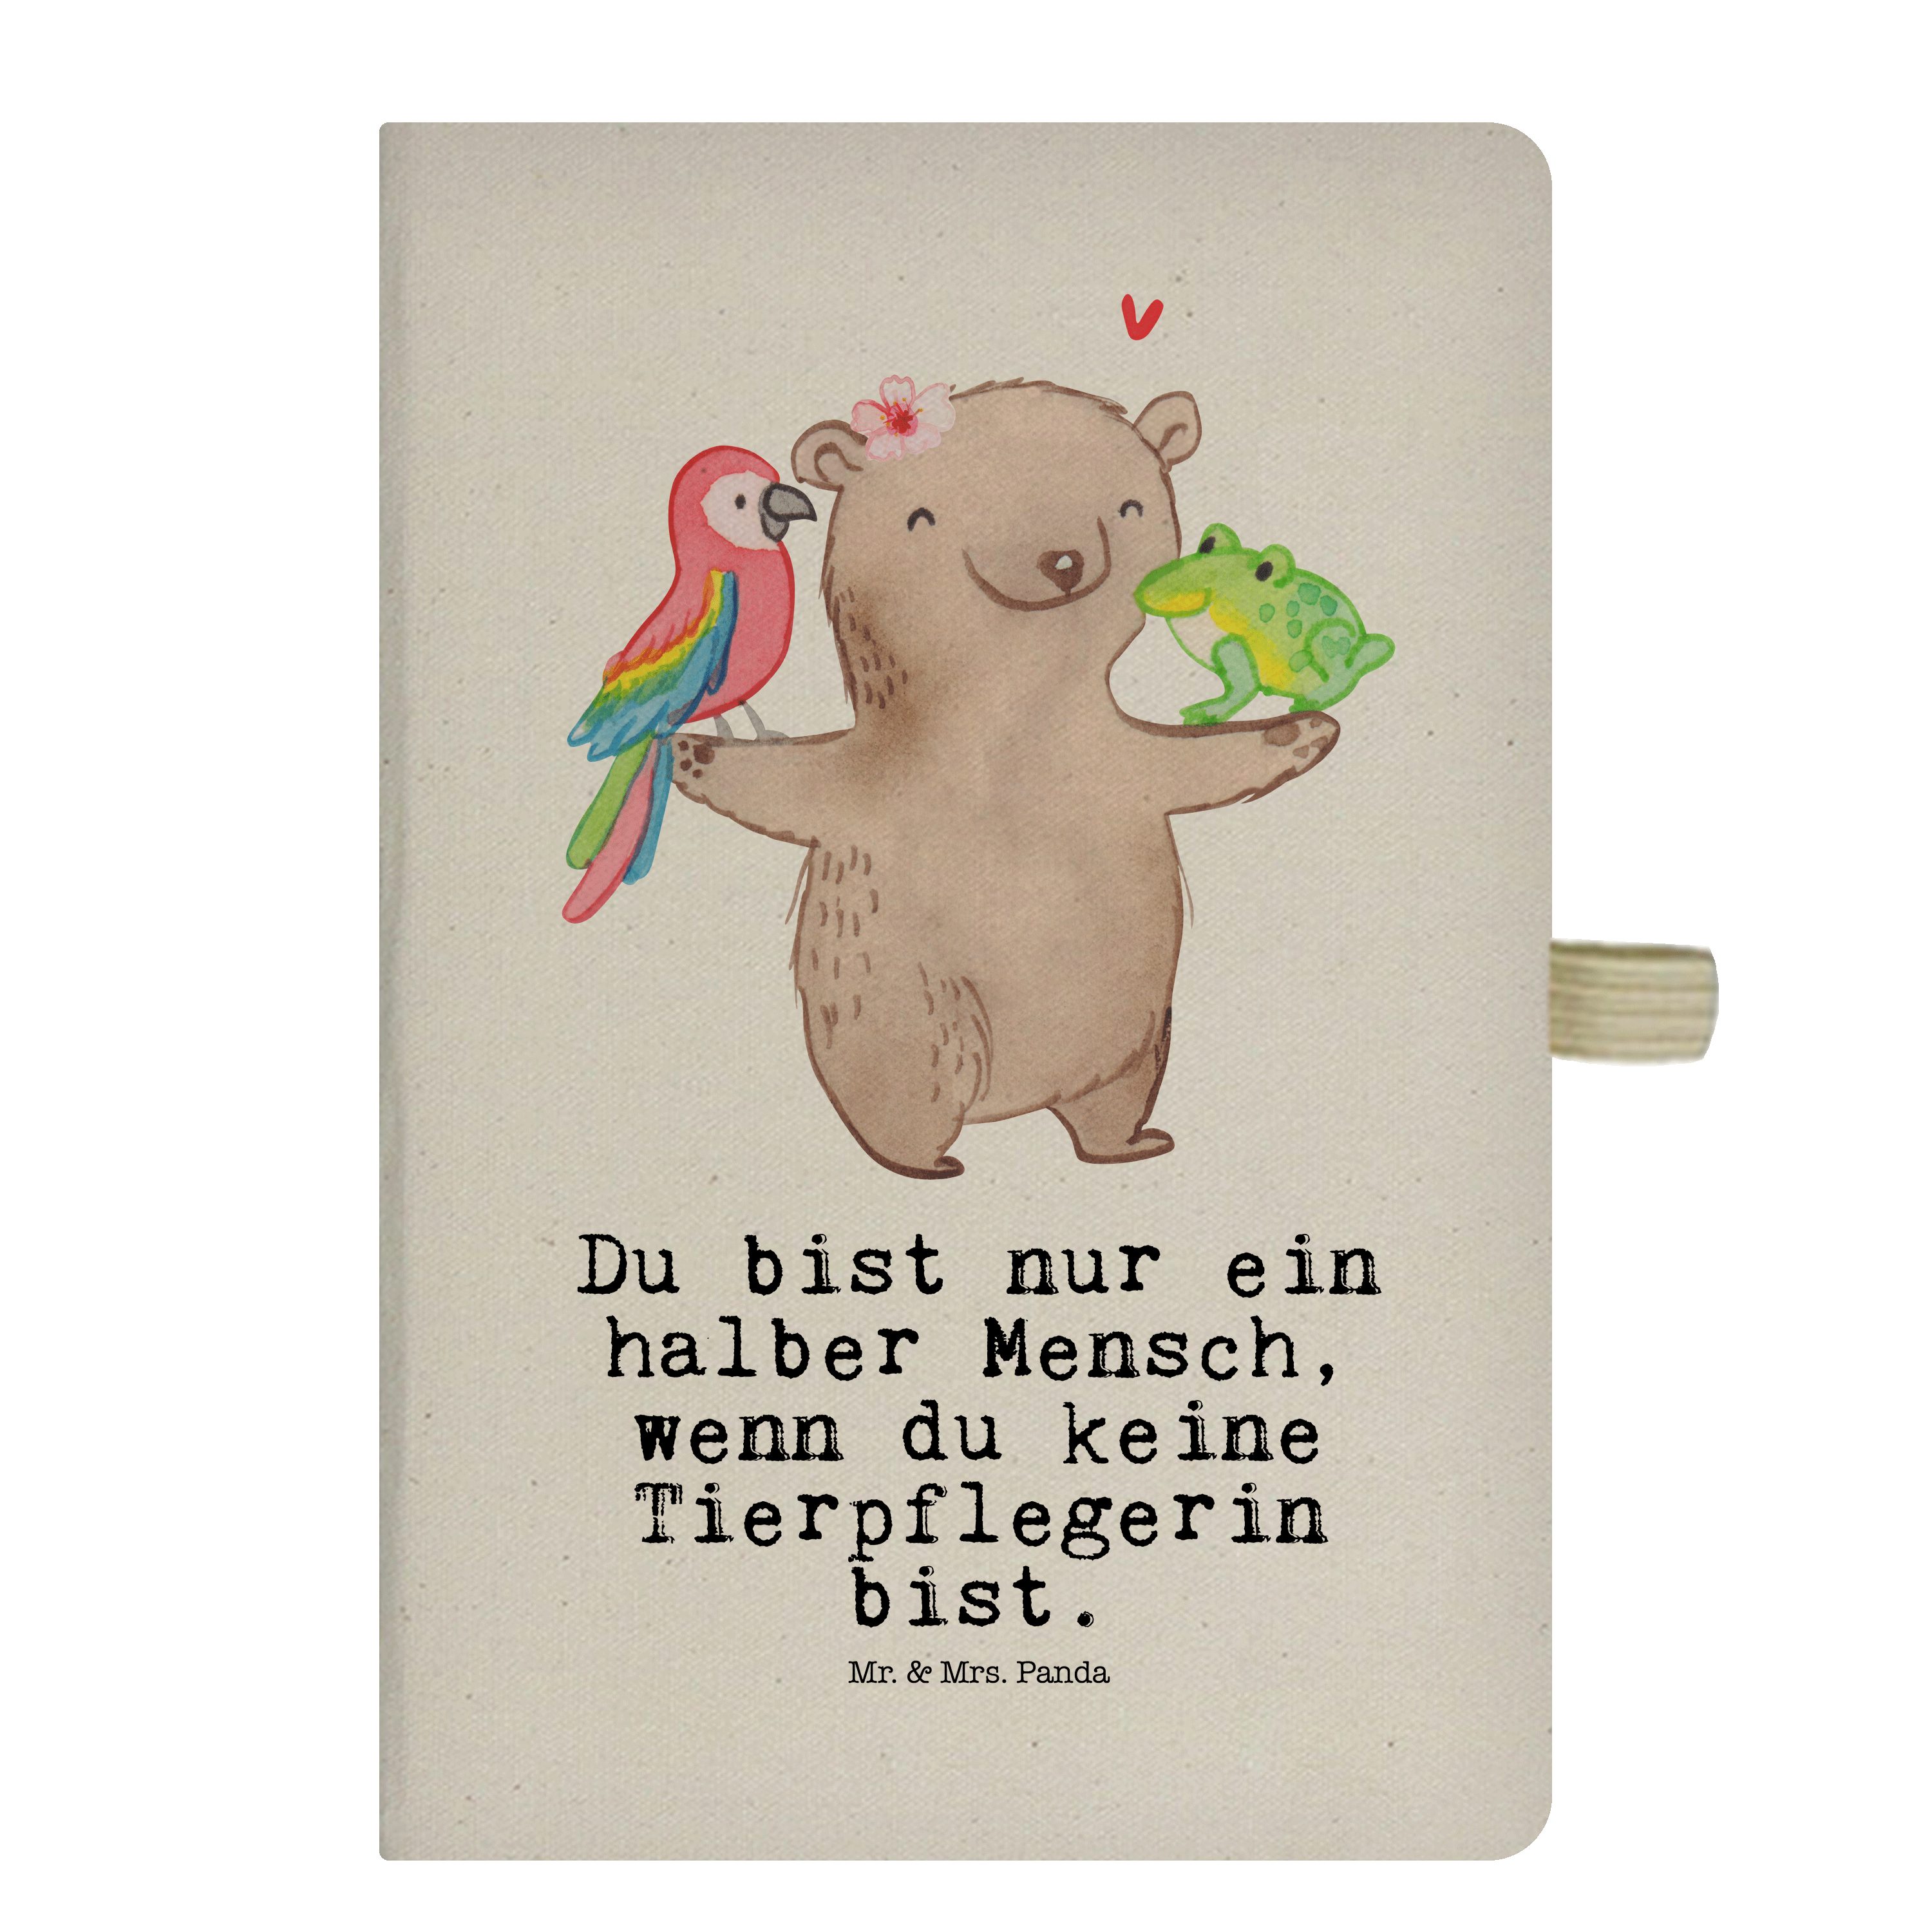 Mr. & Mrs. Panda Notizbuch Tierpflegerin mit Herz - Transparent - Geschenk, Notizen, Adressbuch, Mr. & Mrs. Panda